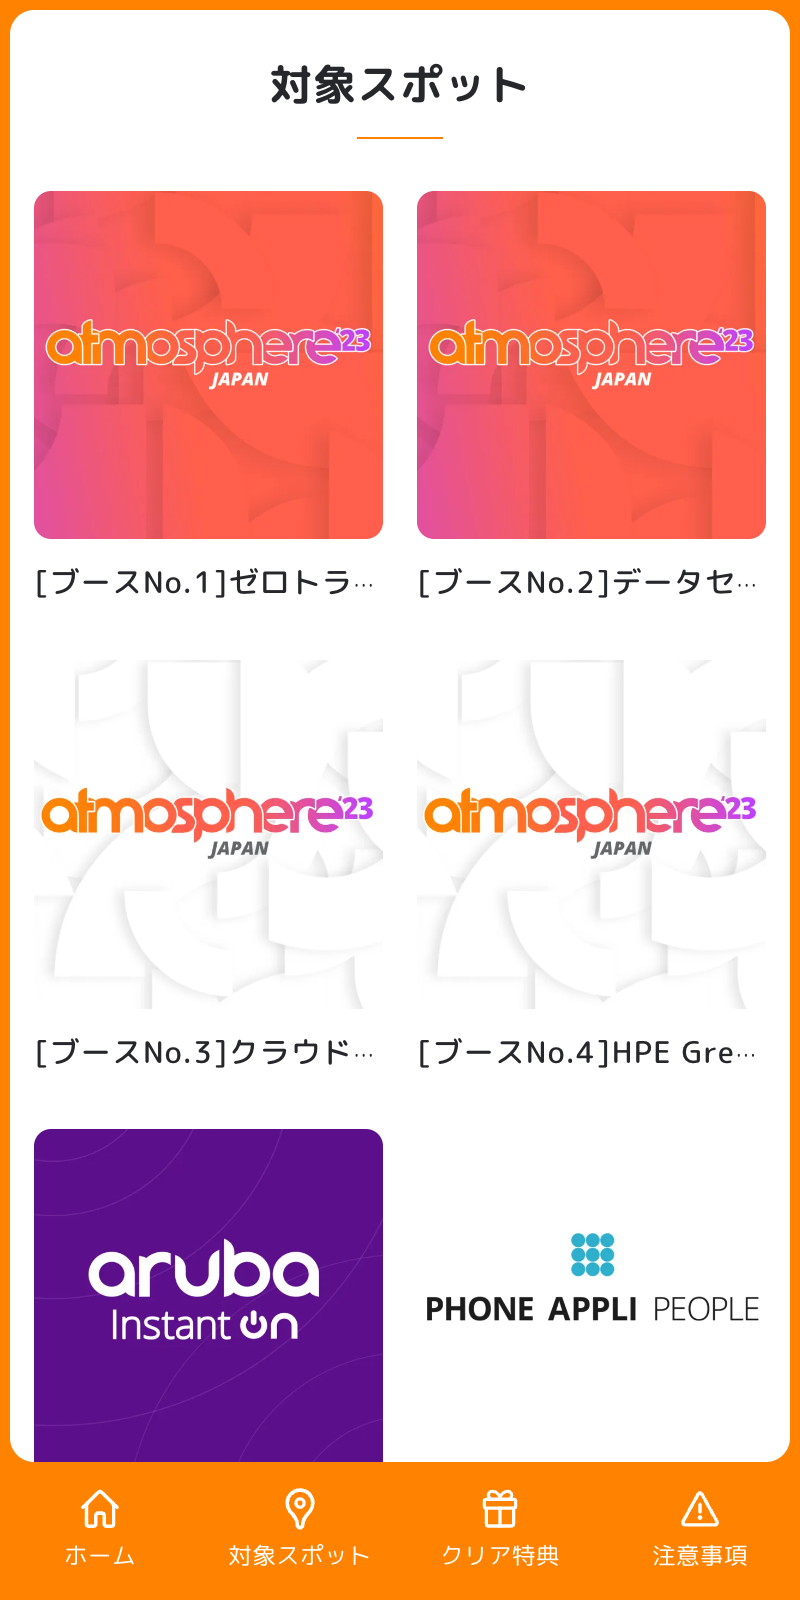 Atmosphere'23 Japanラリーのスクリーンショット 2